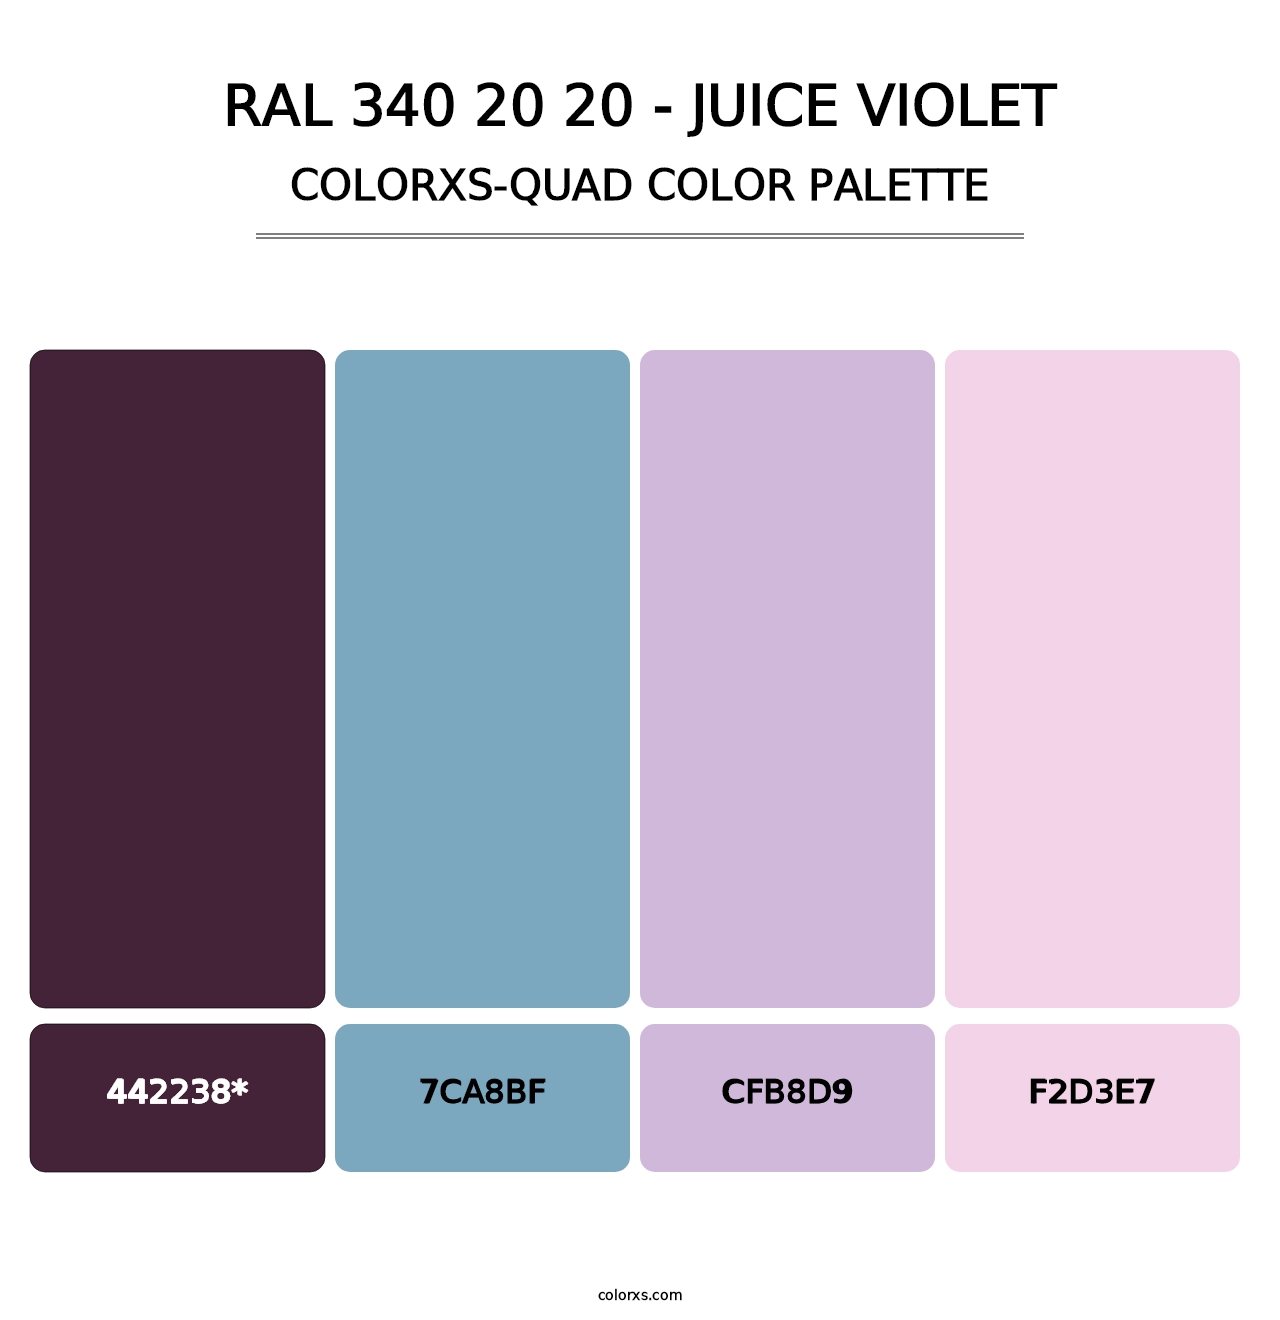 RAL 340 20 20 - Juice Violet - Colorxs Quad Palette